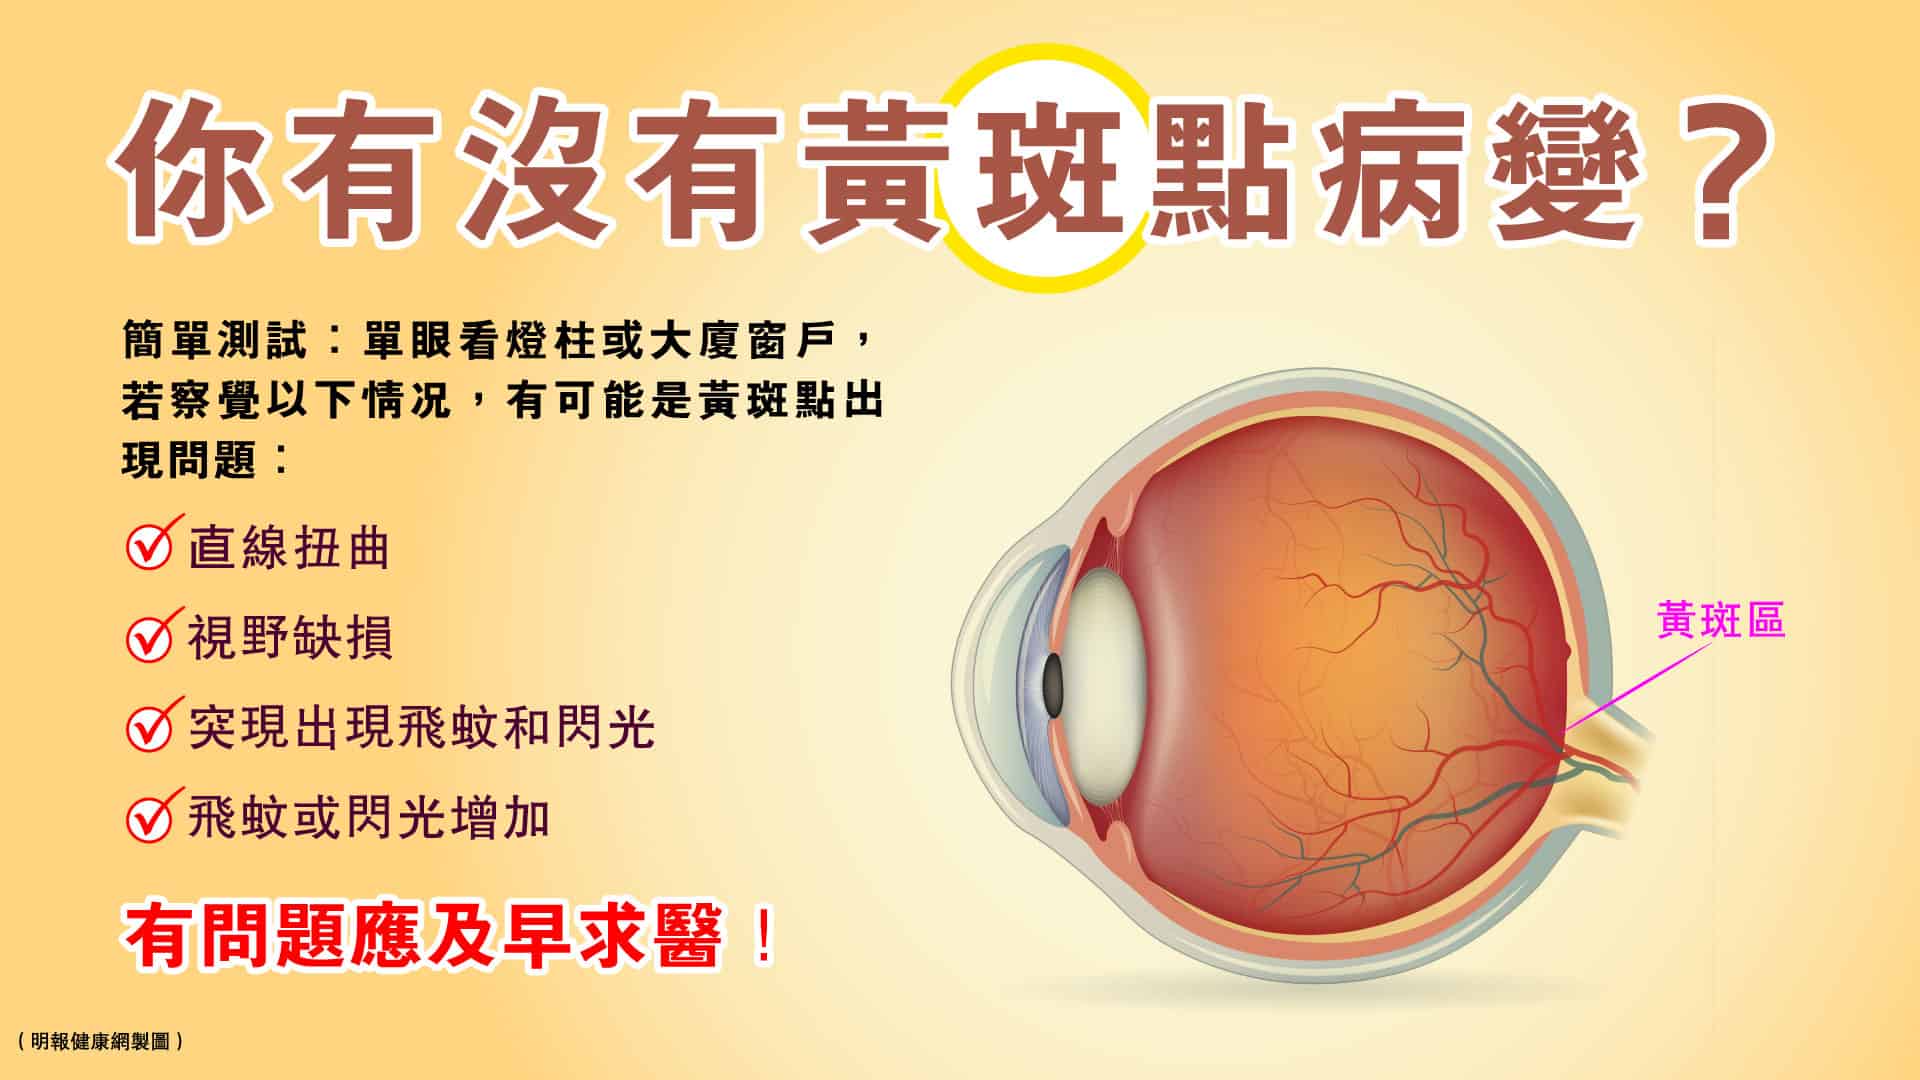 黃斑點病變可以導致視力模糊、視力下降、扭曲變形，甚至失明！一旦出現以下情况，應盡快求醫。